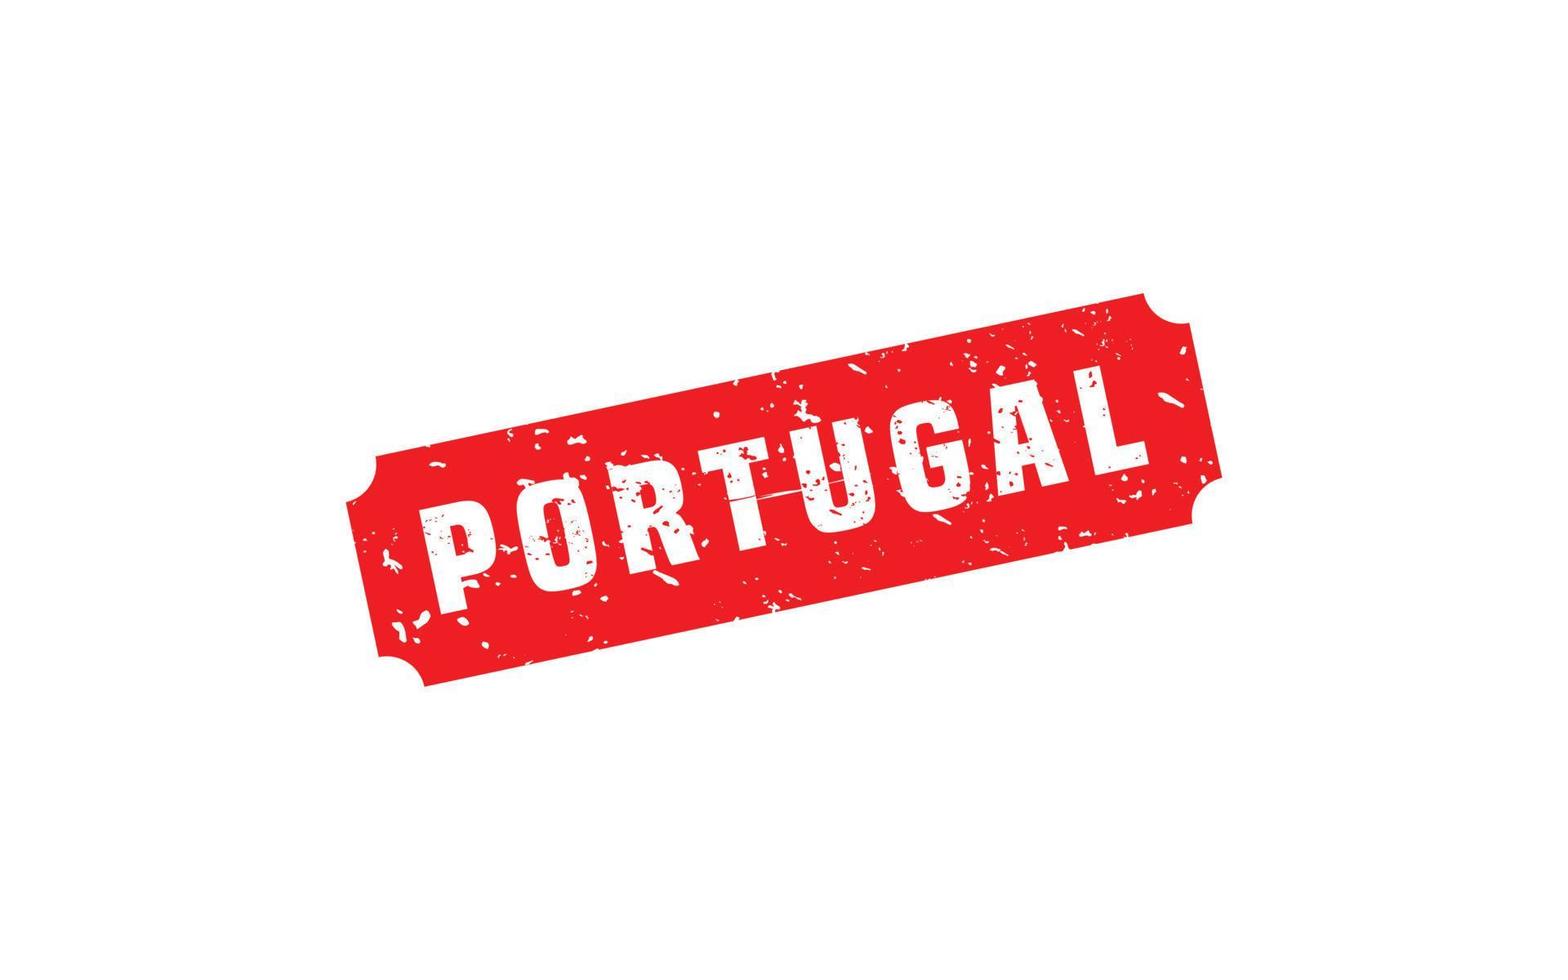 Portugal Stempelgummi mit Grunge-Stil auf weißem Hintergrund vektor